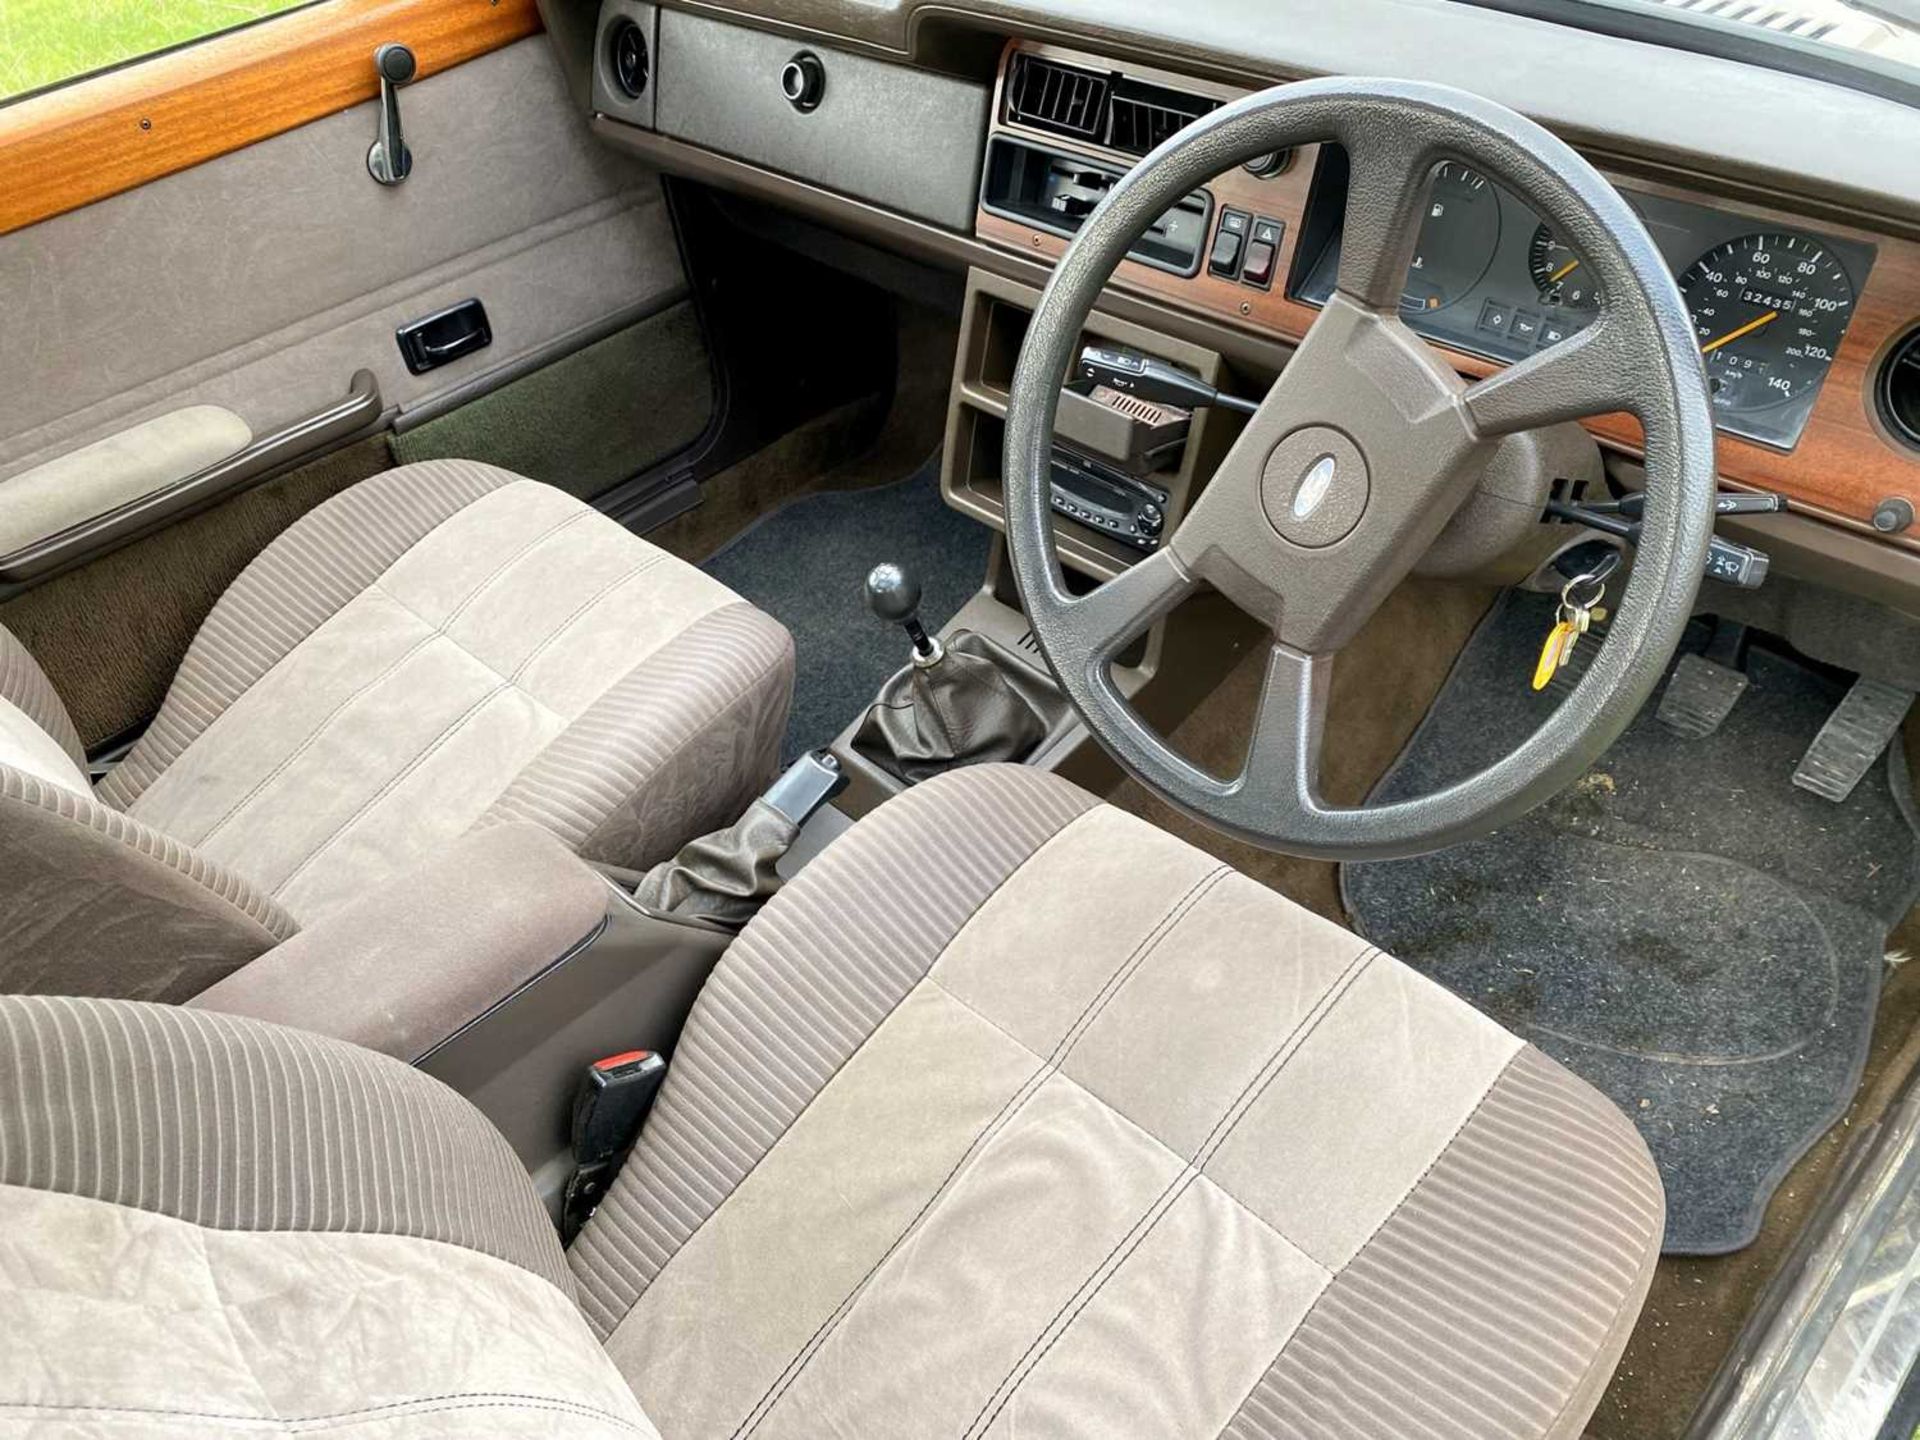 1982 Ford Cortina Crusader 1.6 Saloon - Image 24 of 83